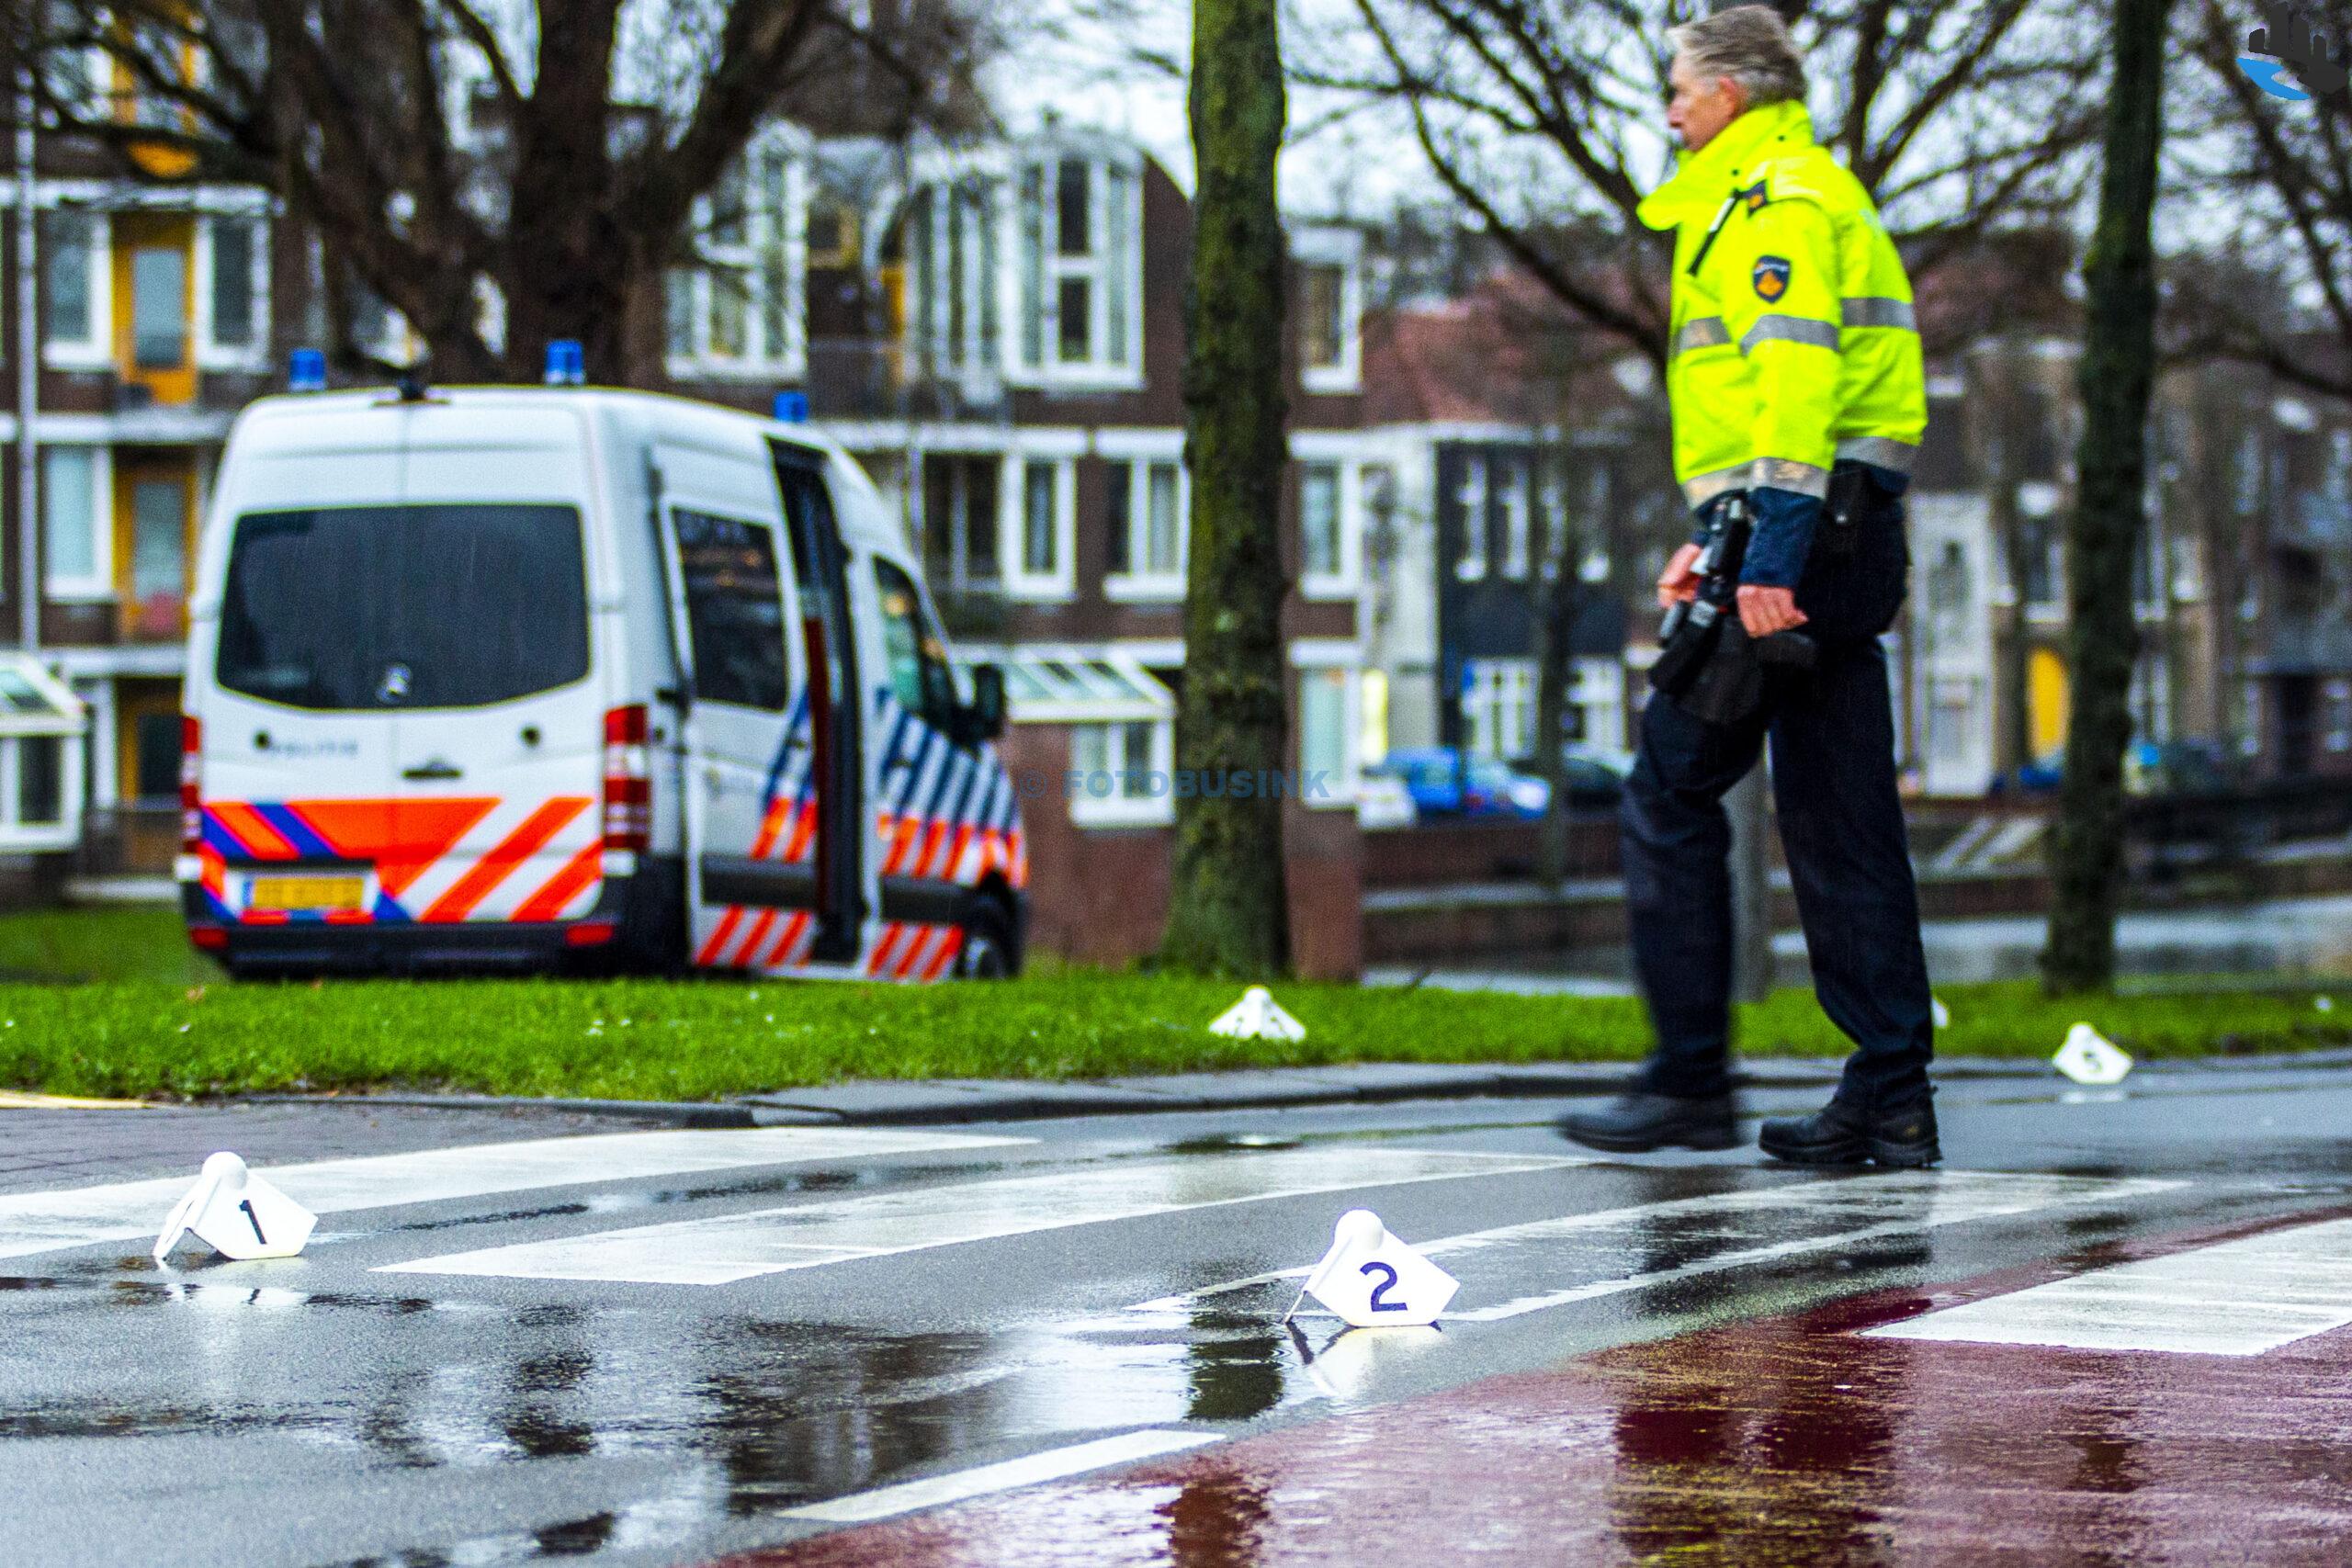 Voetganger zwaargewond na ongeval aan de Spuiboulevard in Dordrecht